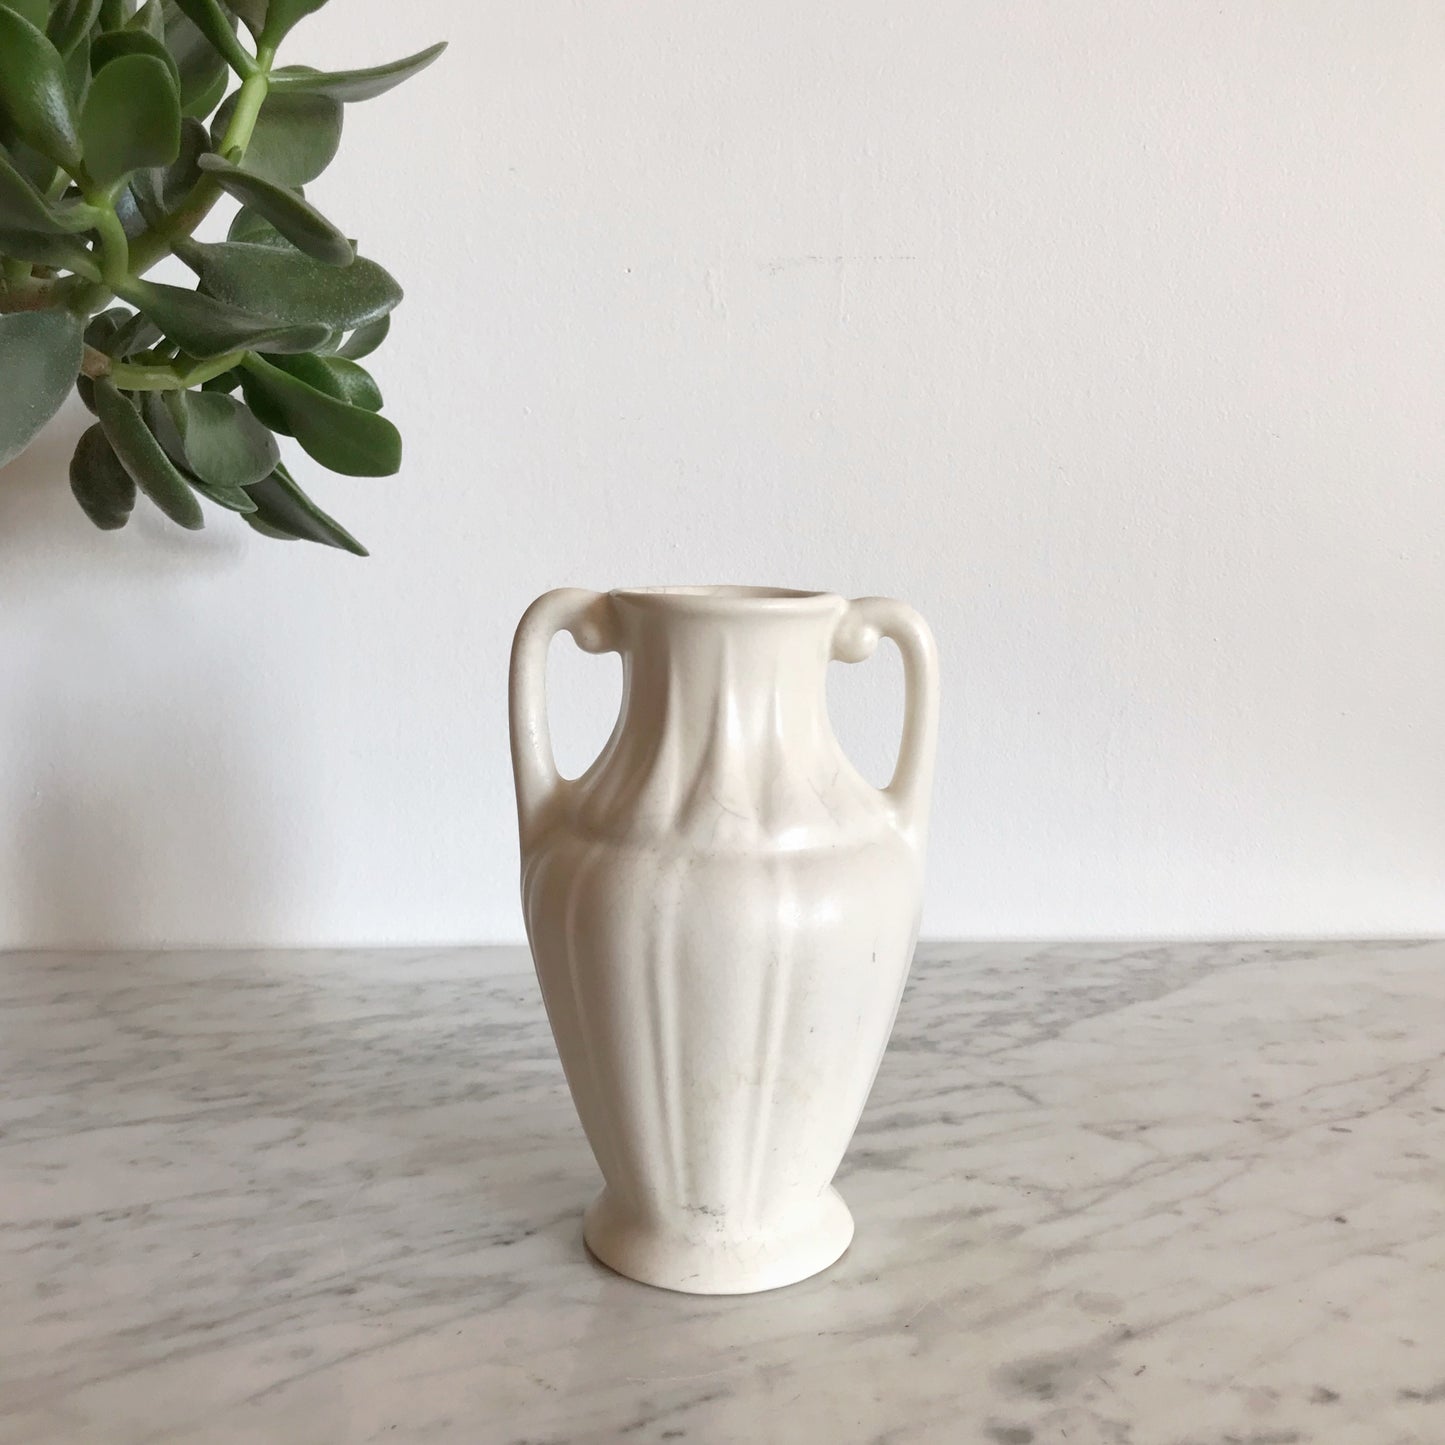 Antique Ceramic Vase / Vessel